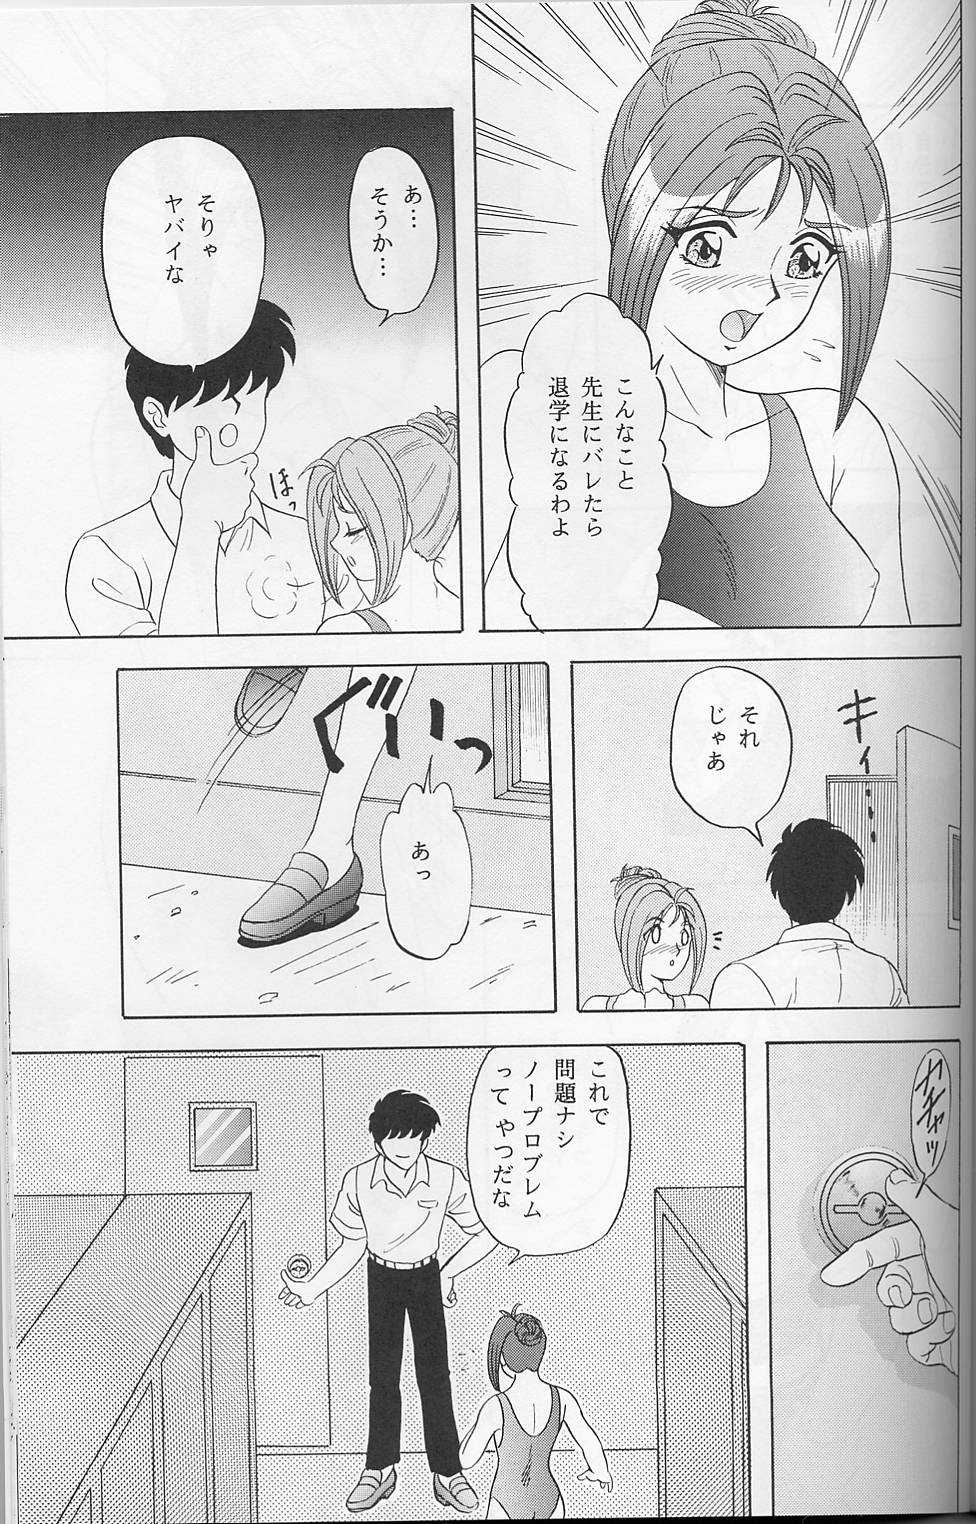 [Chandora & LUNCH BOX (Makunouchi Isami)] Lunch Time 7 (Tokimeki Memorial) [ちゃんどら&ランチBOX (幕の内勇)] らんちたいむ7 (ときめきメモリアル)